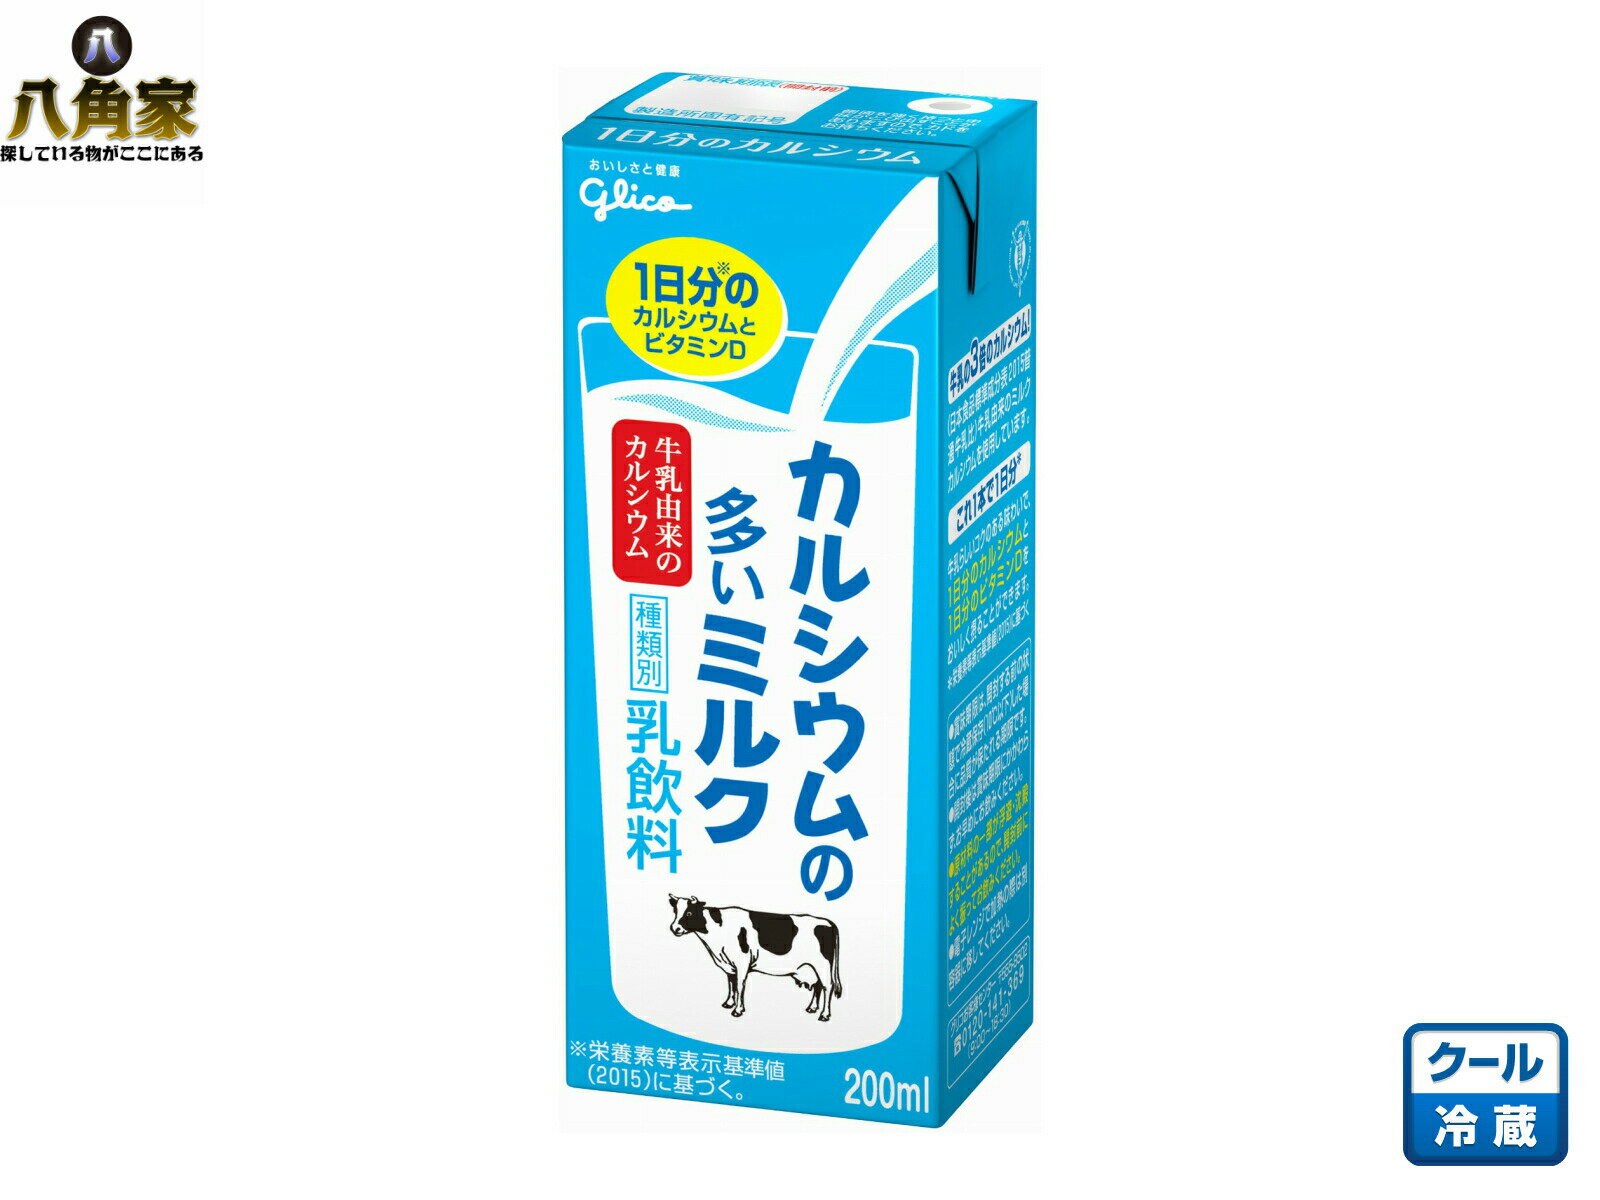 江崎グリコ『カルシウムの多いミルク200ml』